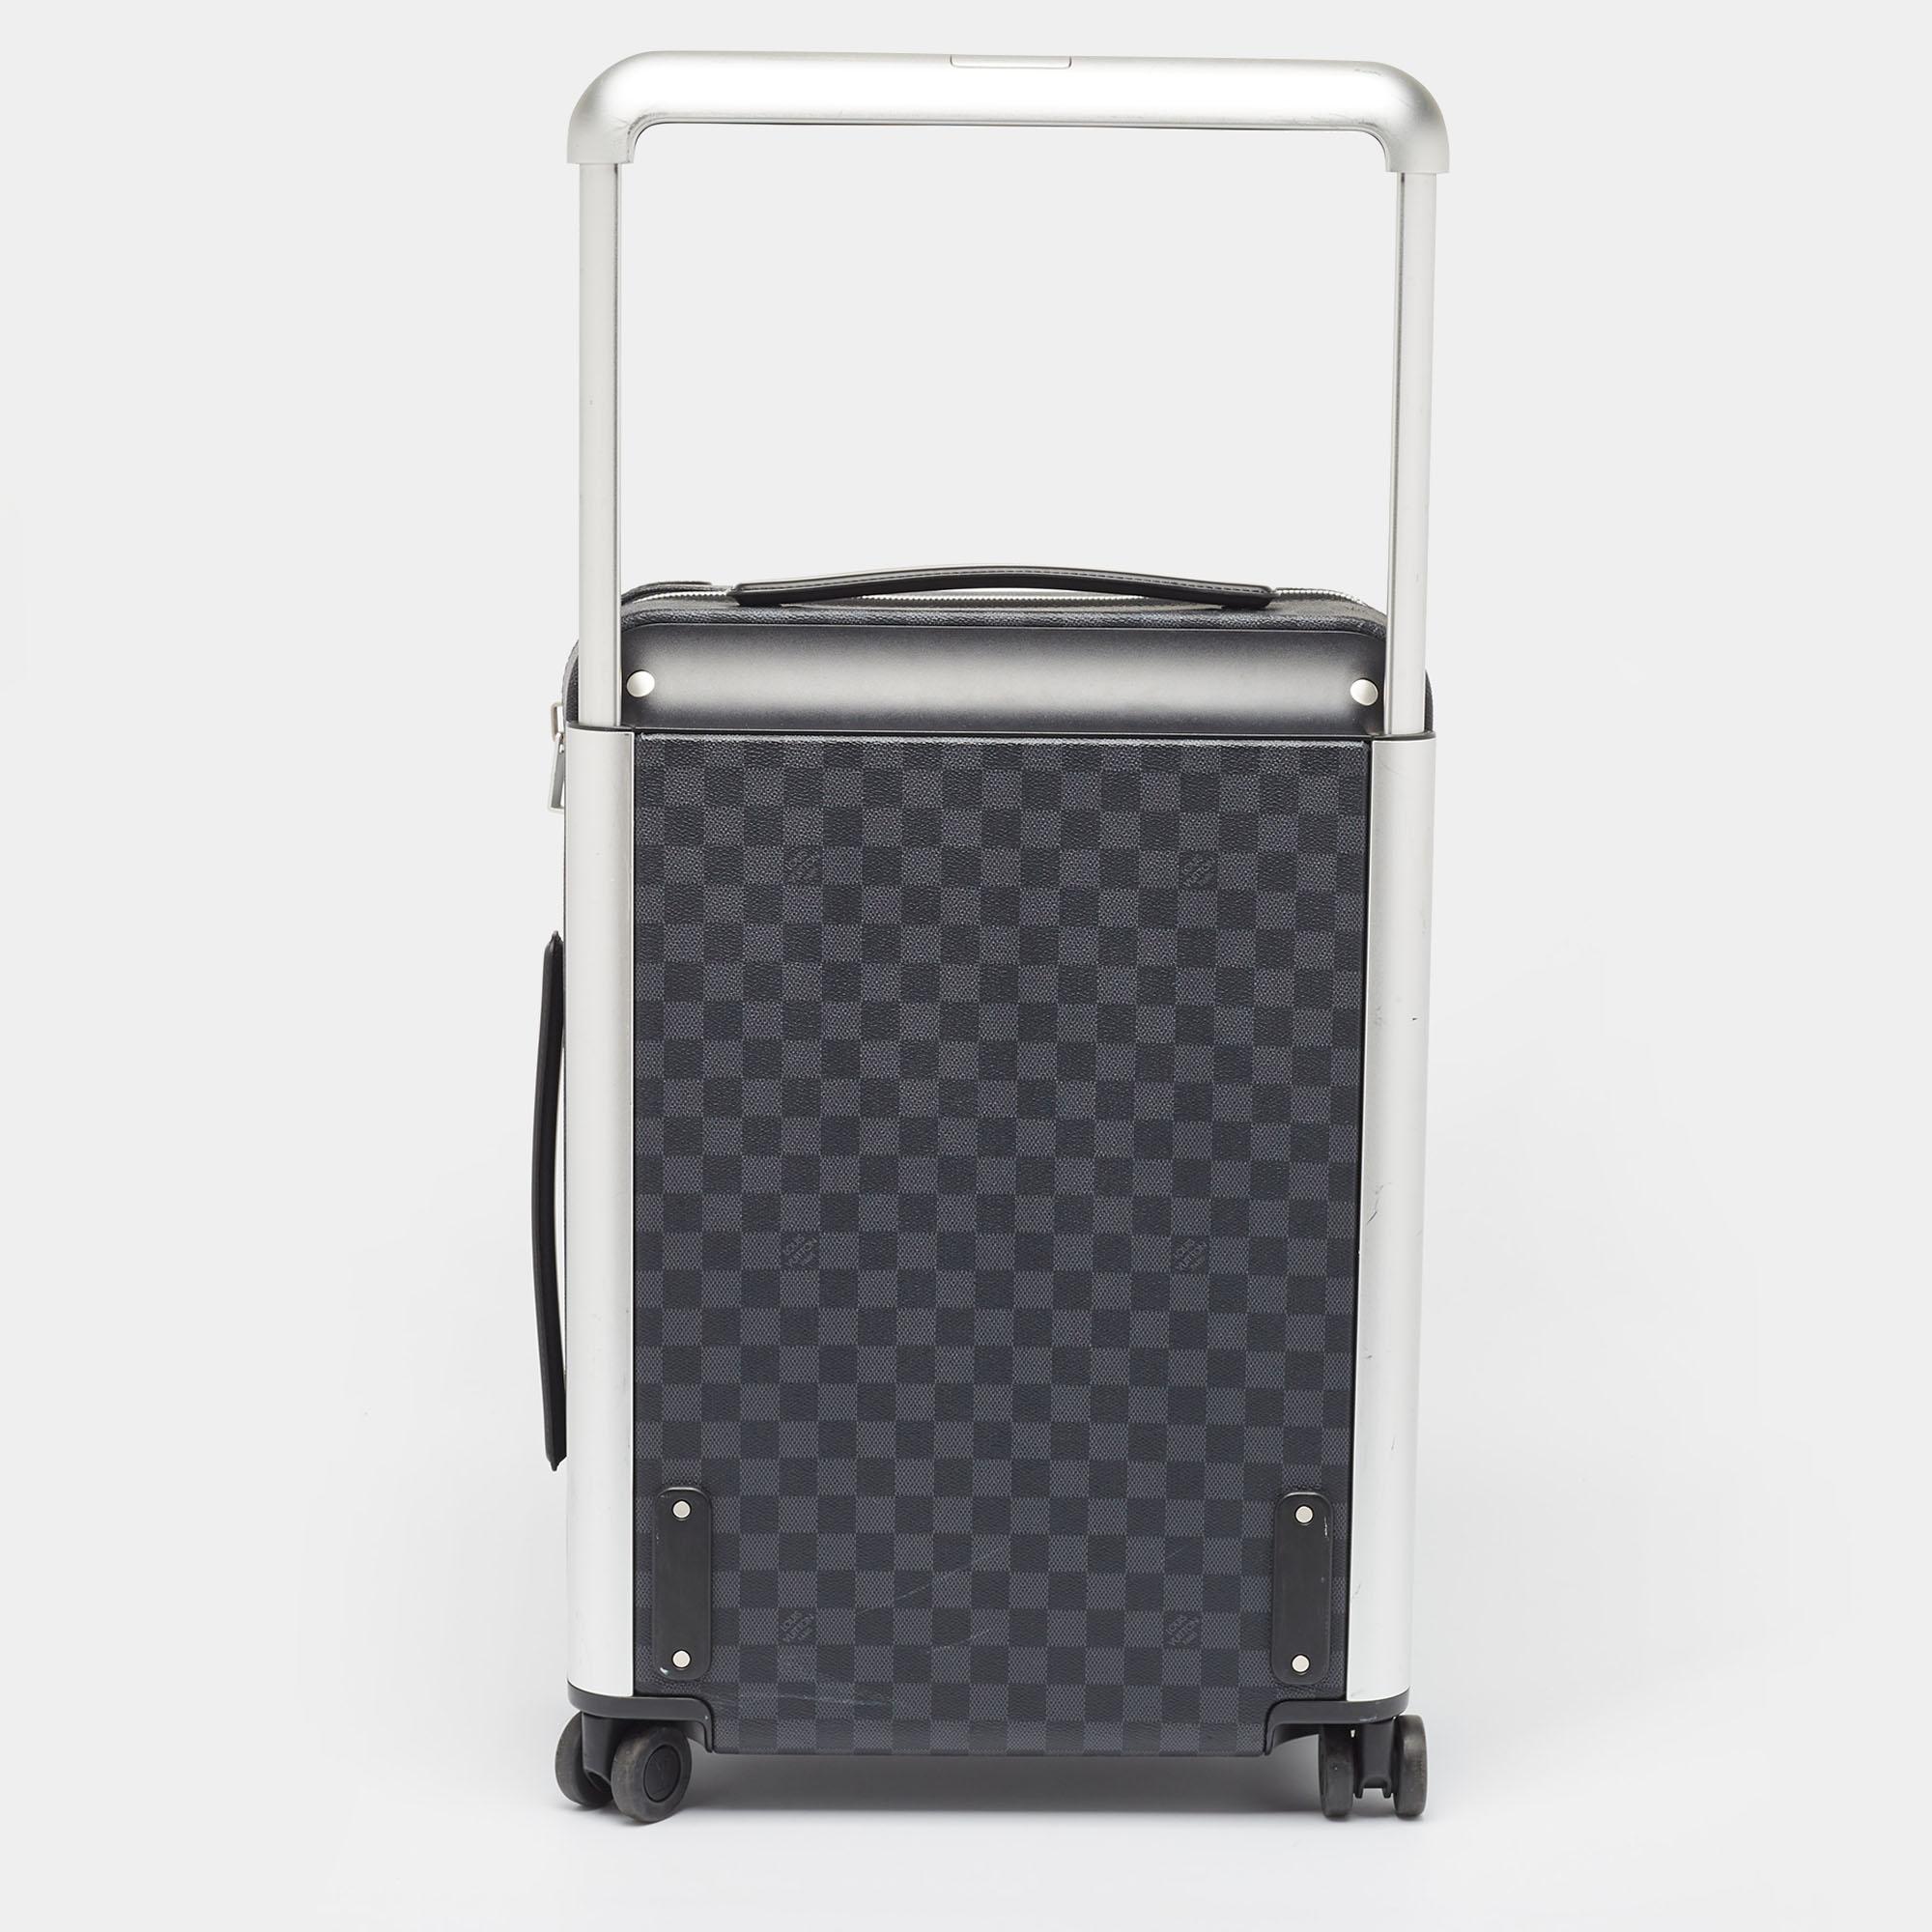 Dieser Koffer, der die legendäre Reisekunst von Louis Vuitton auf elegante Weise weiterführt, ist aus den charakteristischen Materialien gefertigt und besticht durch traditionelle Handwerkskunst und ein innovatives, modernes Design. Leicht, robust